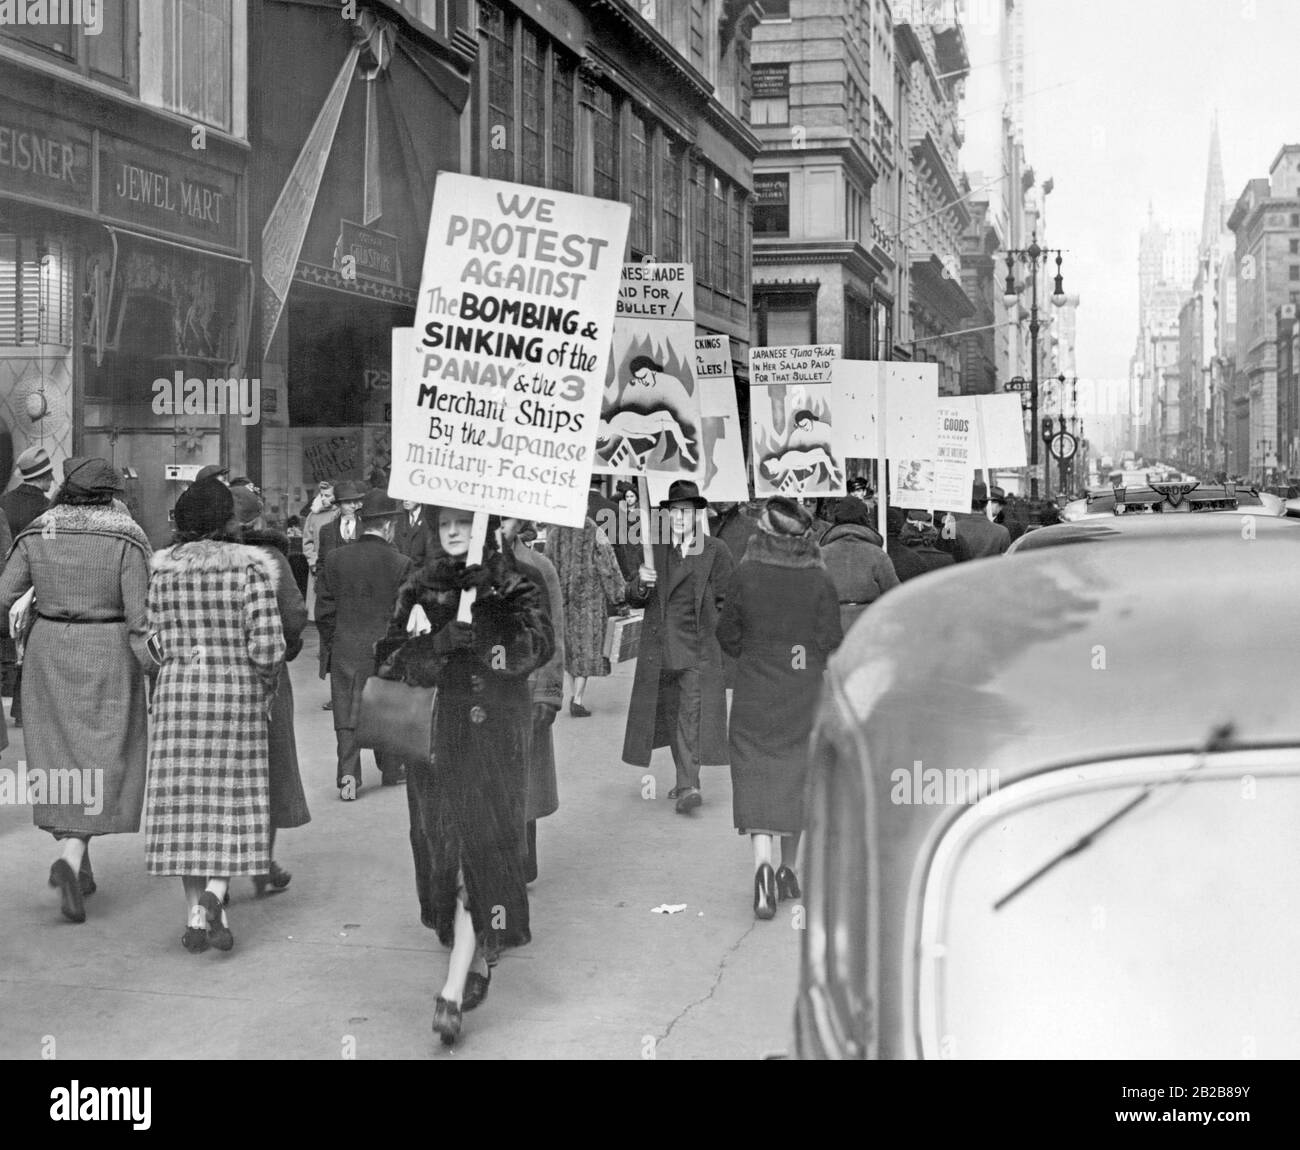 Eine Gruppe demonstriert mit Schildern und Plakaten in New York nach einem japanischen Angriff auf das amerikanische Kanonenboot Panay und einige Handelsschiffe. Stockfoto